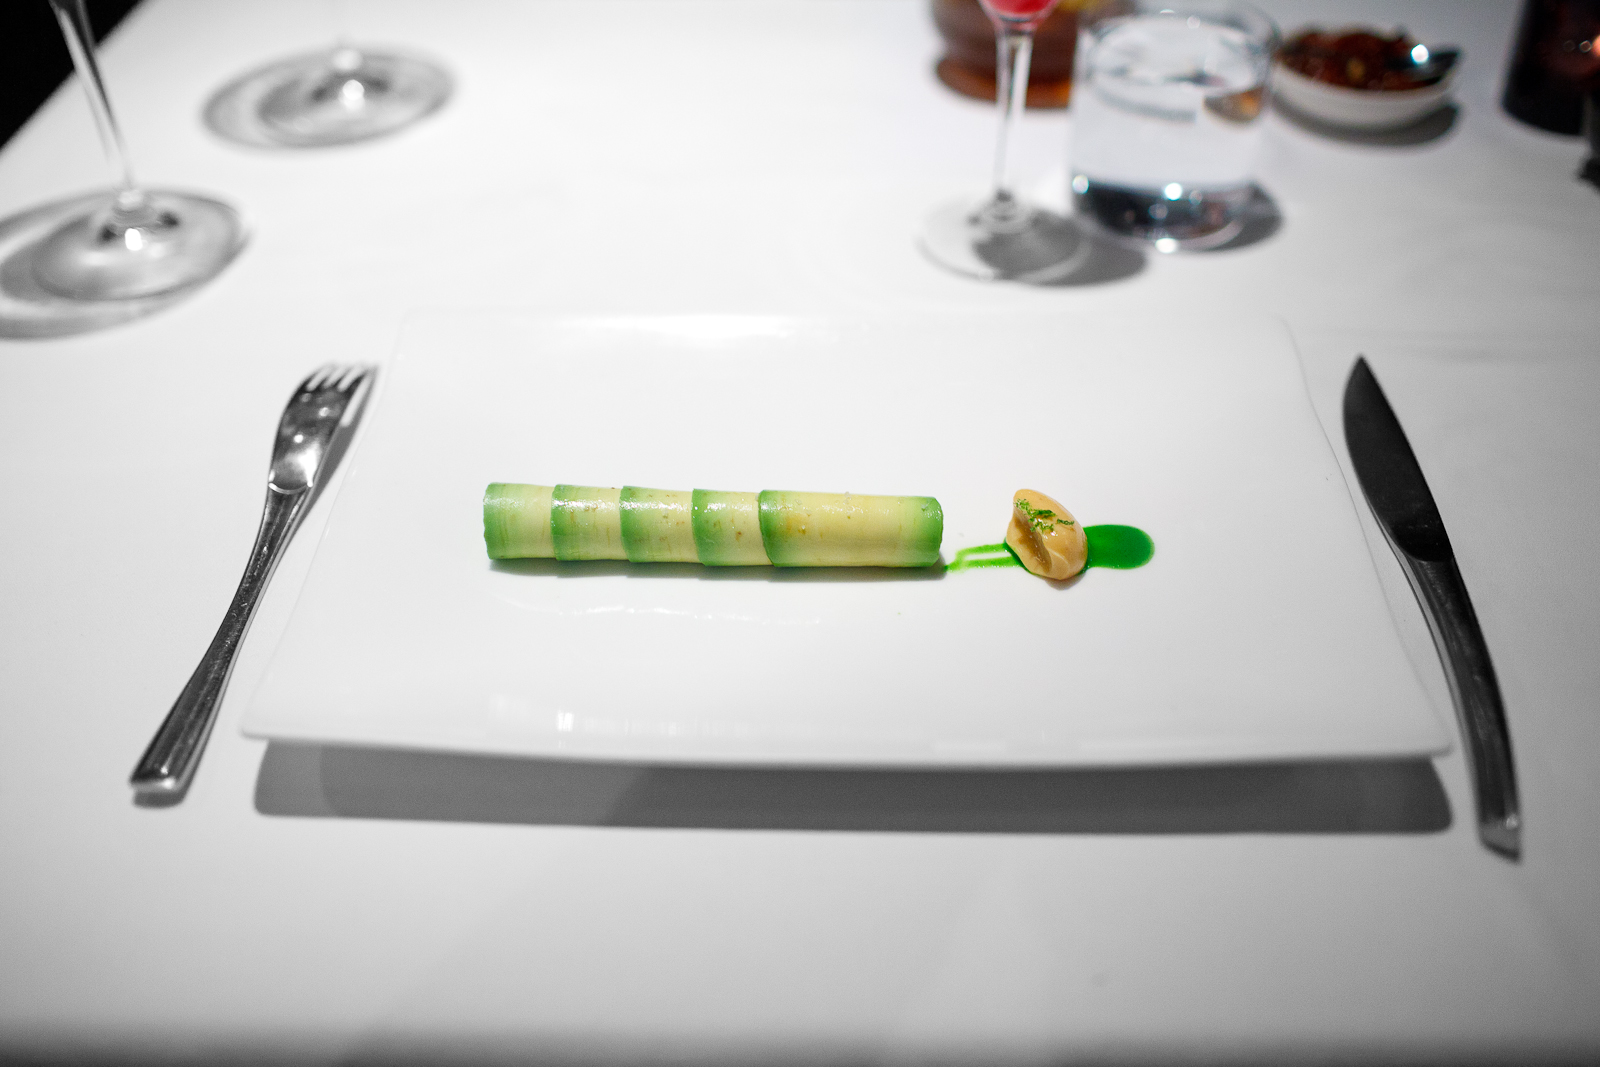 3rd Course: Flautas de aguacate rellenas de camarón cristal. Mayonesa de chipotle rallado. Emulsión de cilantro.